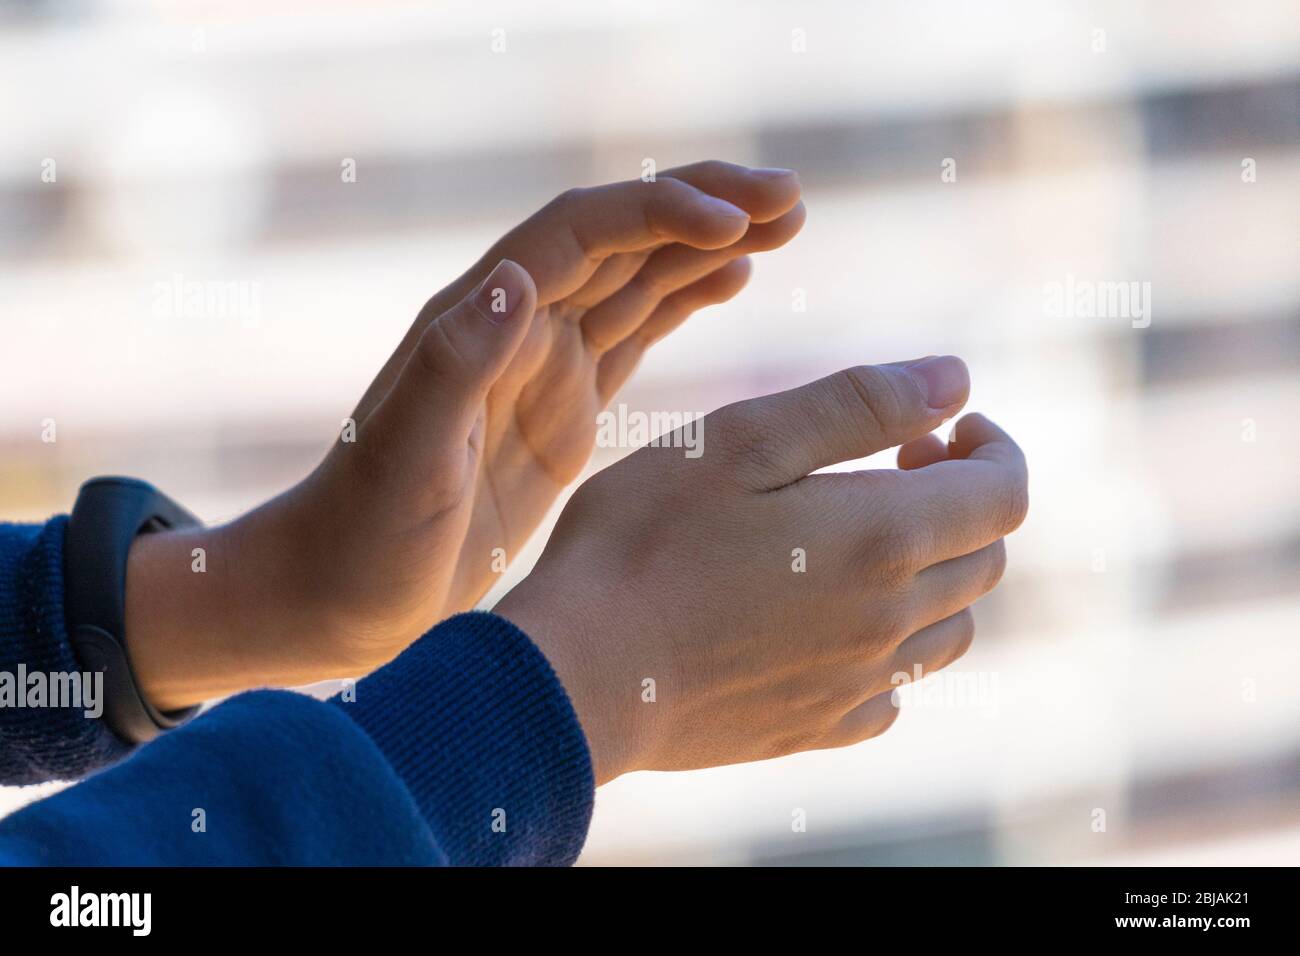 Beifall. Kind klatscht Hände, applaudieren vom Balkon, um Ärzte, Krankenschwestern, Krankenhausmitarbeiter während der Coronavirus-Pandemie Quarantäne zu unterstützen Stockfoto